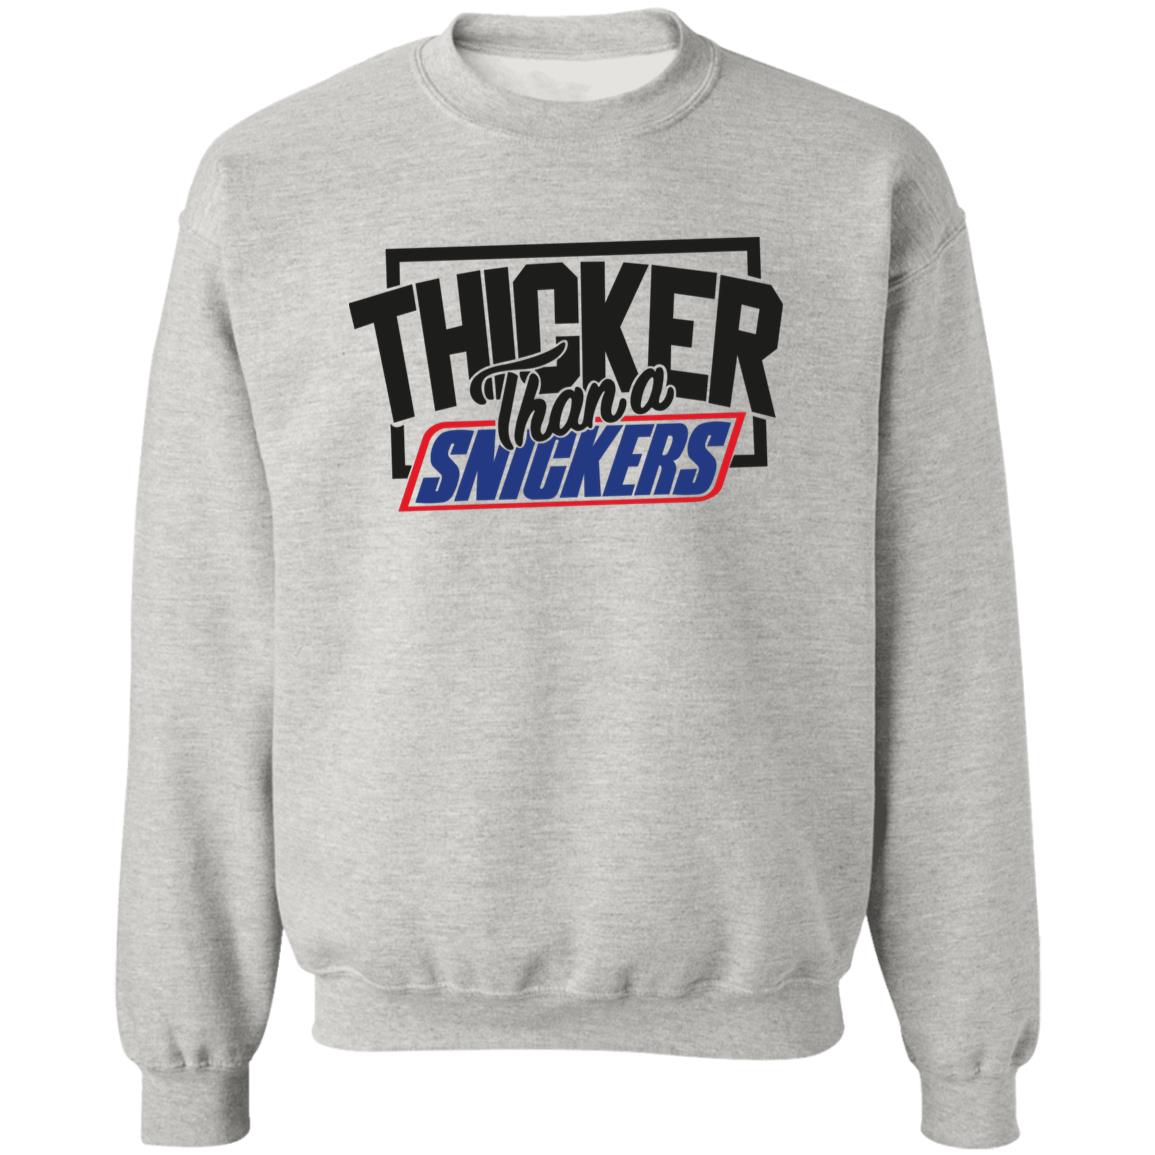 Thicker Thn Snicker -  Sweatshirt